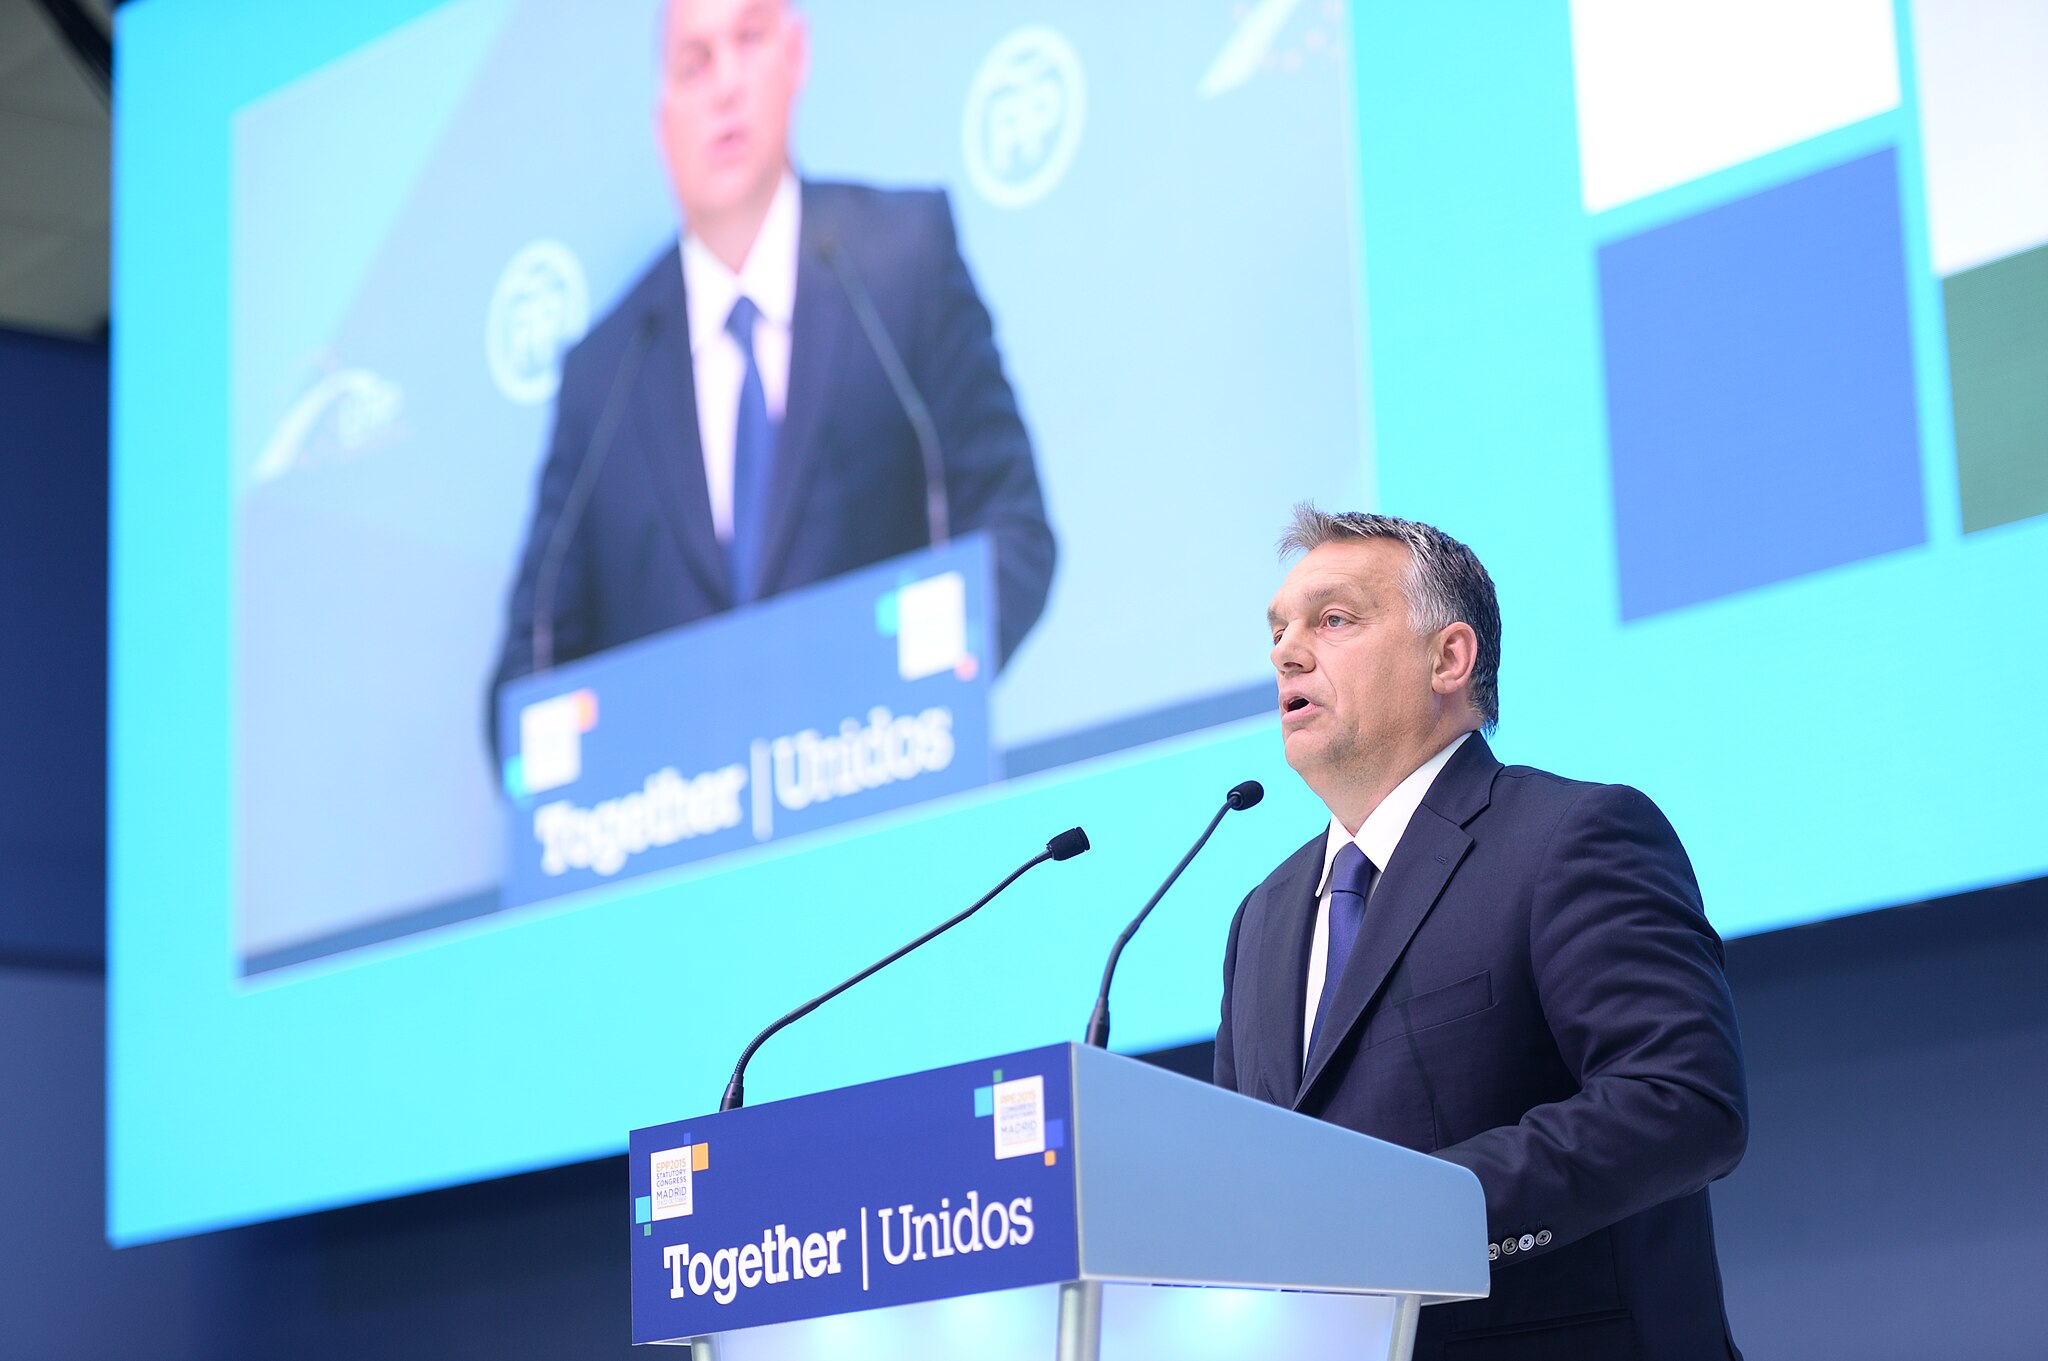 Bild: European People's Party, EPP Congress Madrid 2015-10 Orbán (2), CC BY 2.0, via Wikimedia Commons (keine Änderungen vorgenommen)